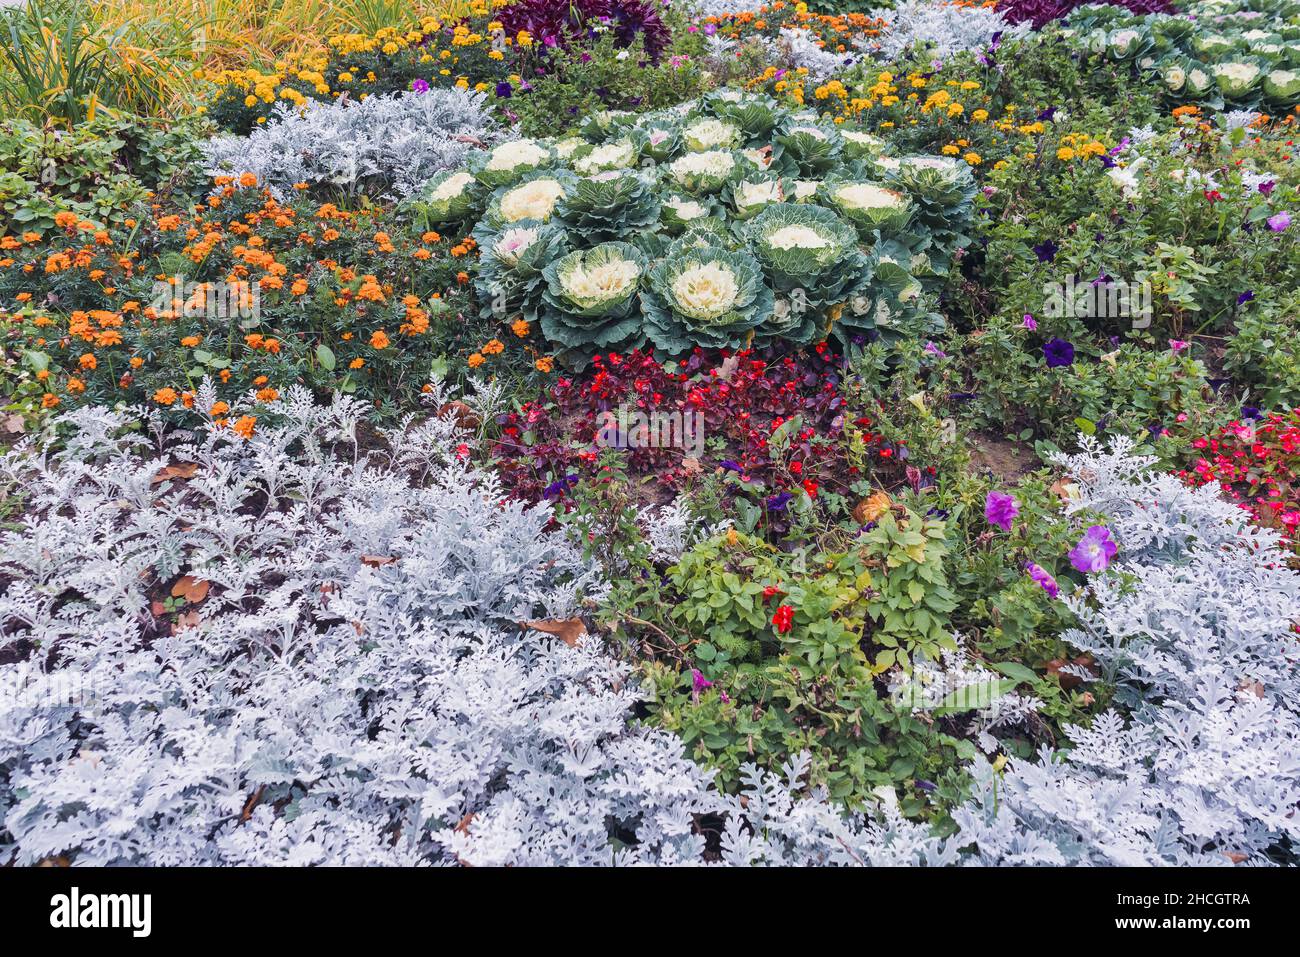 vue sur le lit de fleurs de la fin de l'été ou du début de l'automne avec plantes et fleurs de saison Banque D'Images